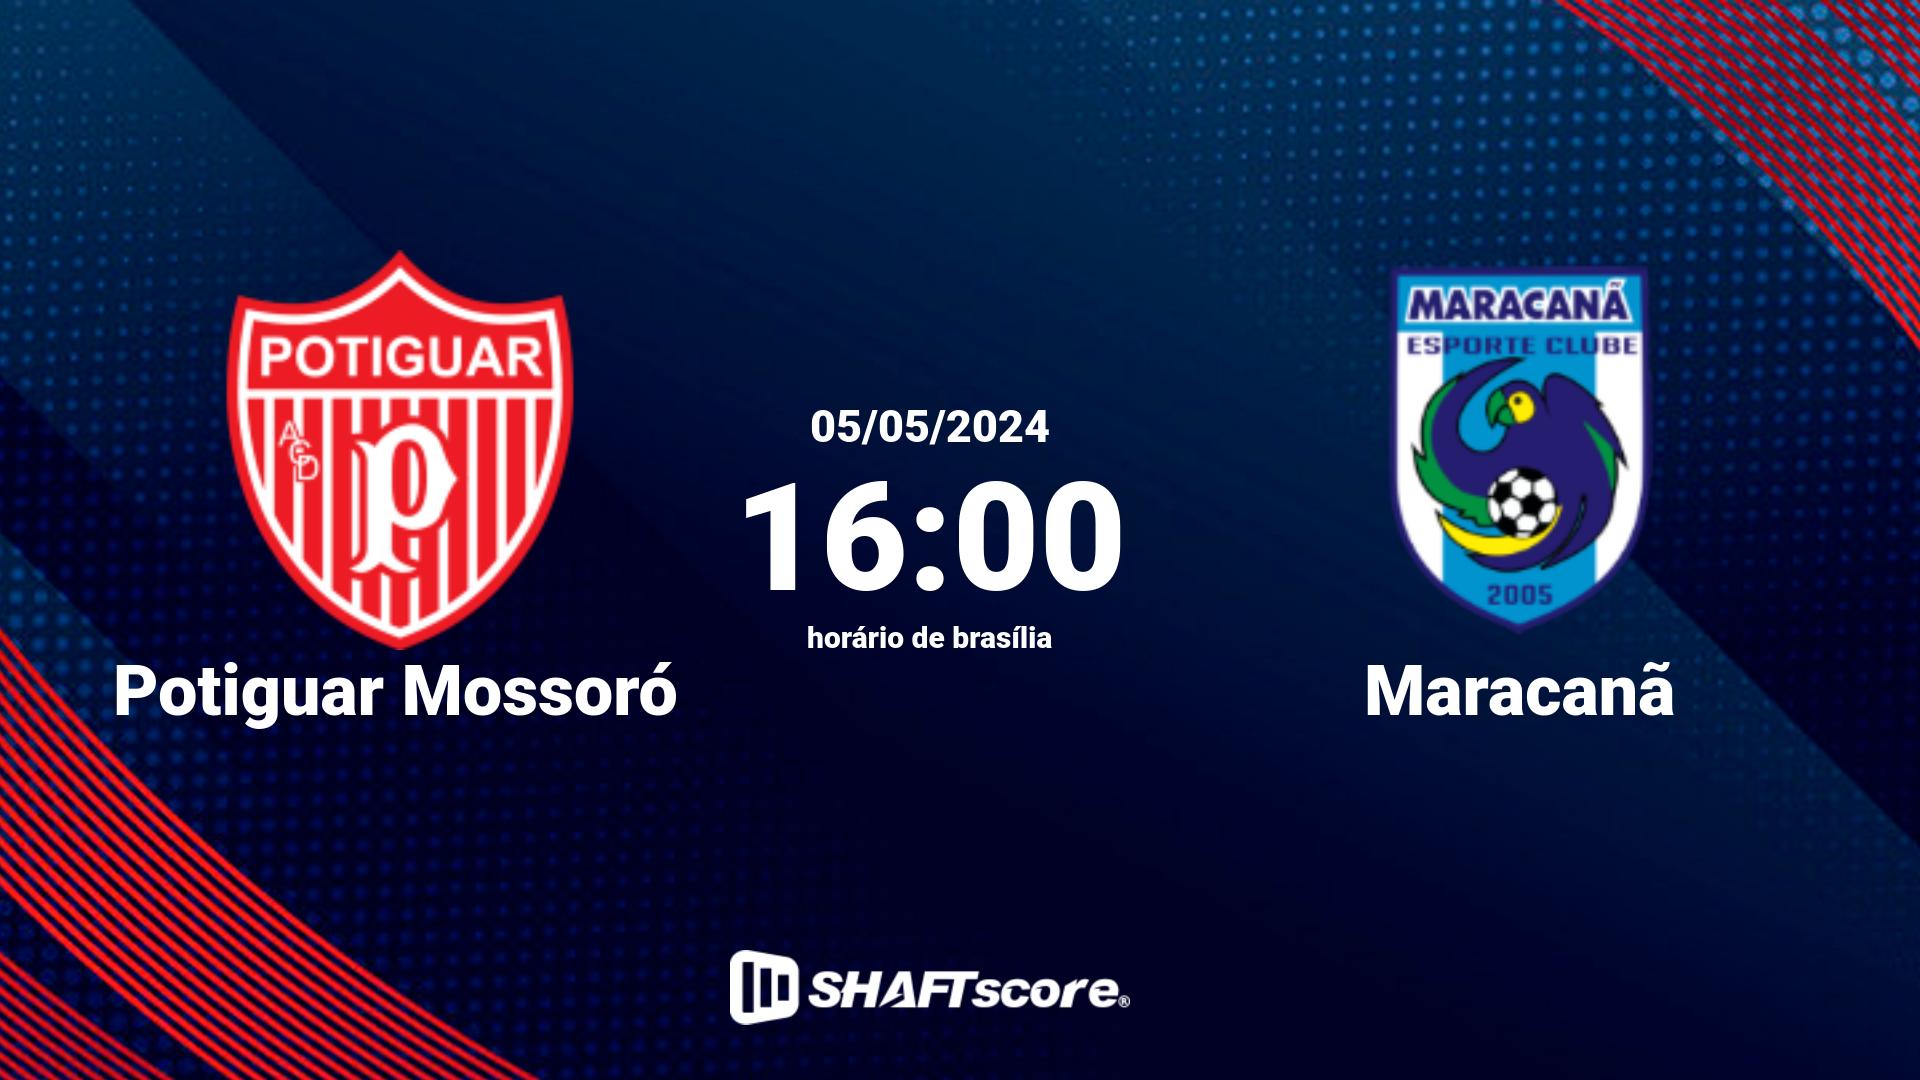 Estatísticas do jogo Potiguar Mossoró vs Maracanã 05.05 16:00